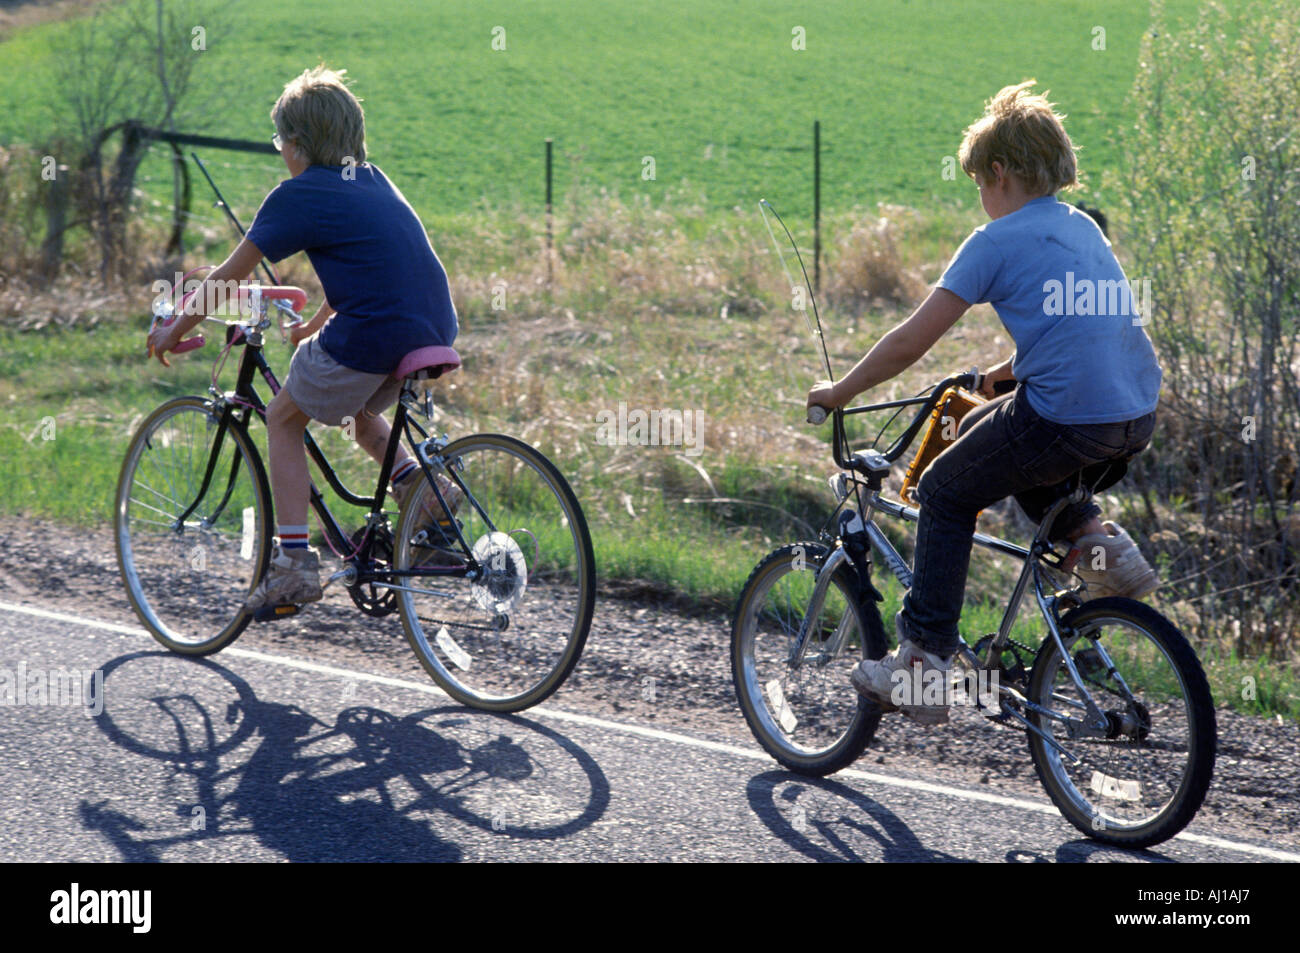 boys riding bikes